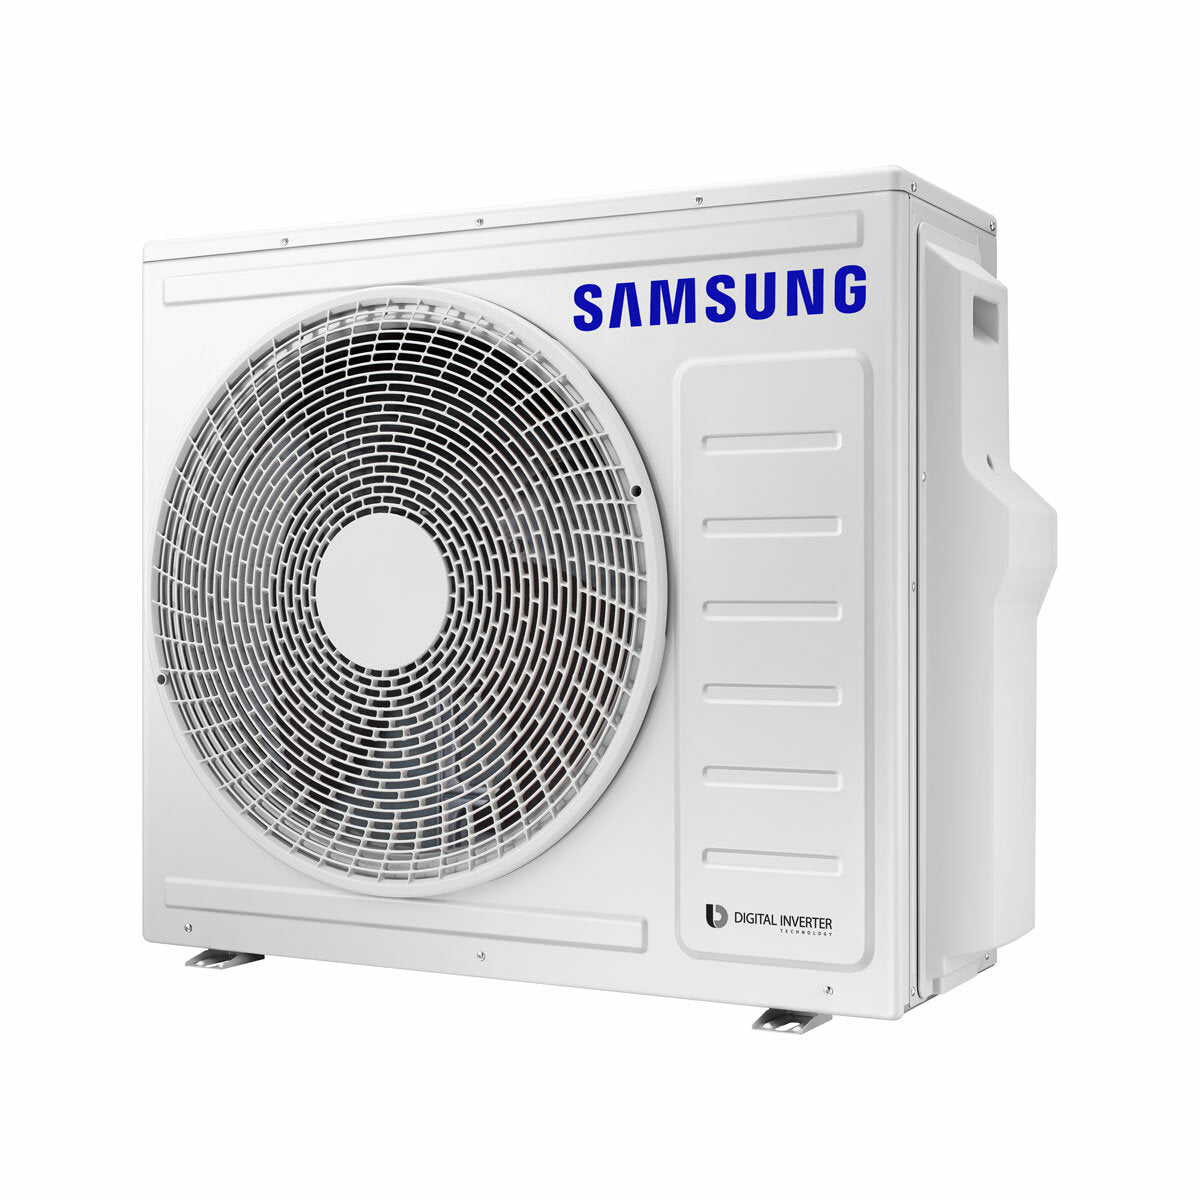 Samsung Cebu Wi-Fi Quad Split Klimaanlage 7000 + 9000 + 12000 + 12000 BTU Wechselrichter A++ WLAN Außengerät 8,0 kW